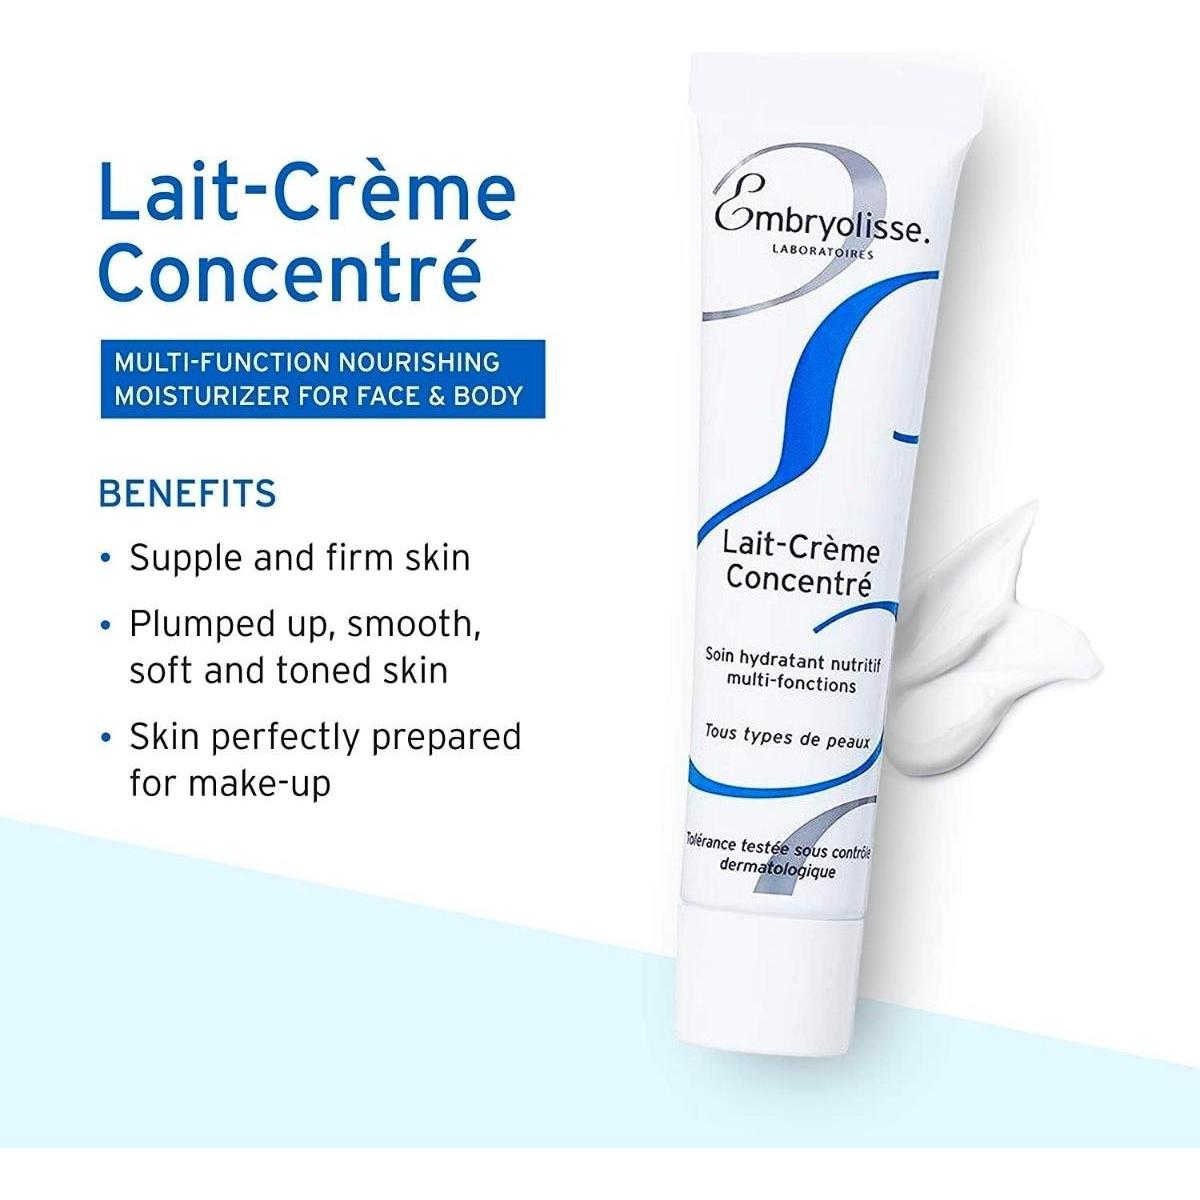 Embryolisse | Lait-Crème Concentré | 30ml - DG International Ventures Limited